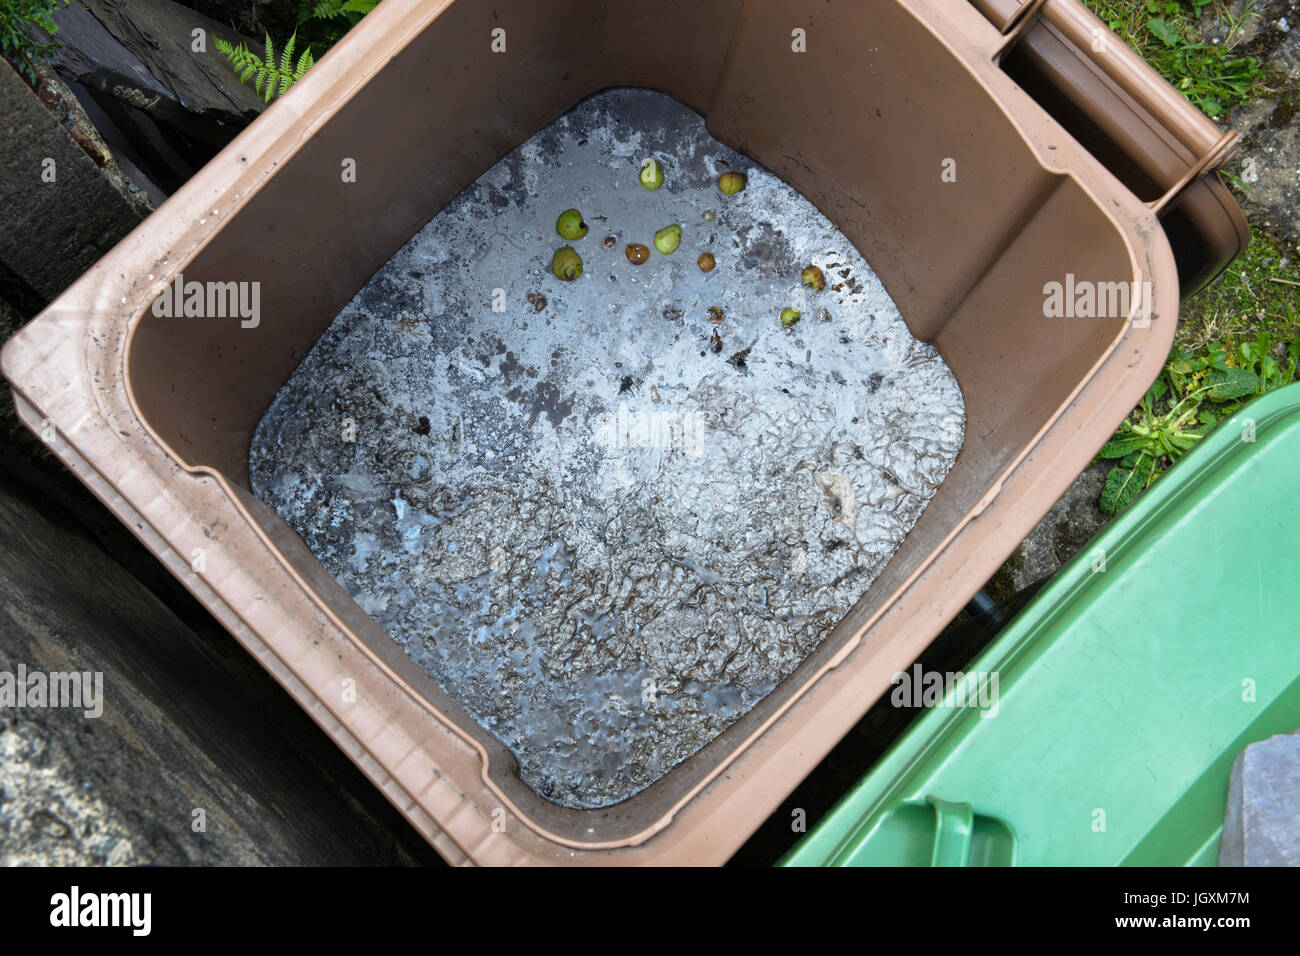 Erbacce da giardino immagini e fotografie stock ad alta risoluzione - Alamy